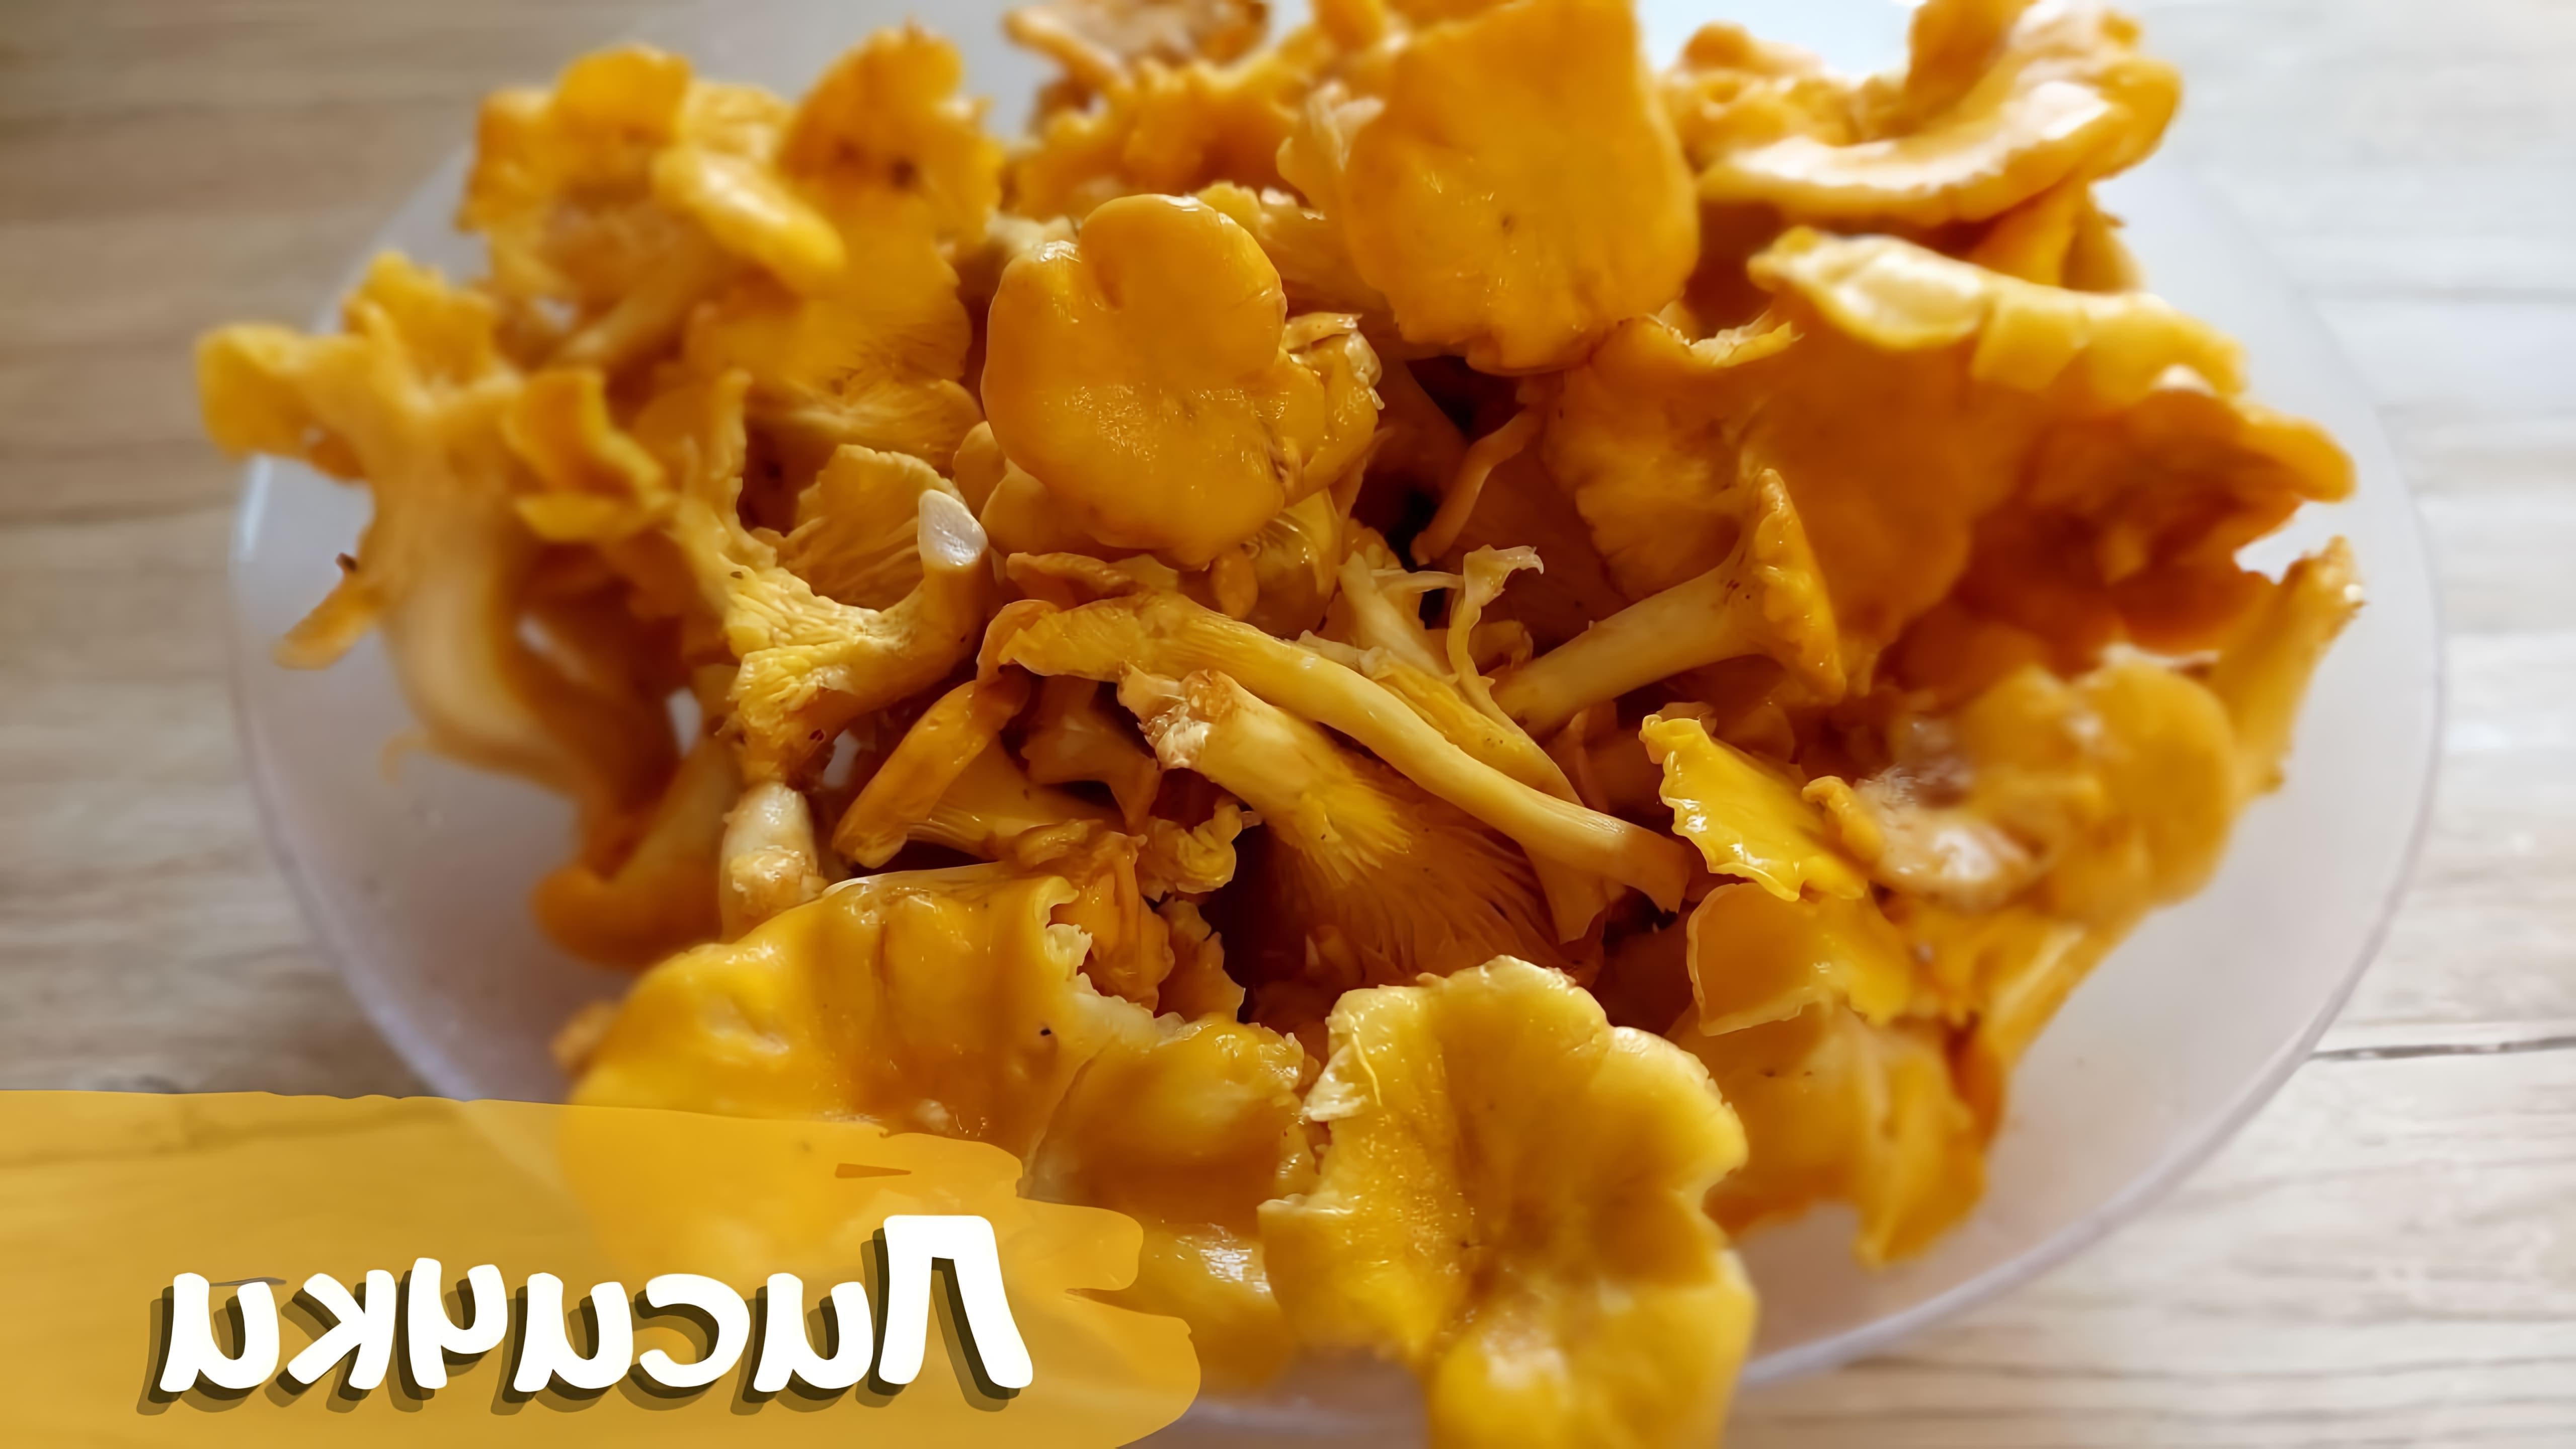 В этом видео демонстрируется процесс приготовления жареных лисичек с чесноком и сливочным маслом